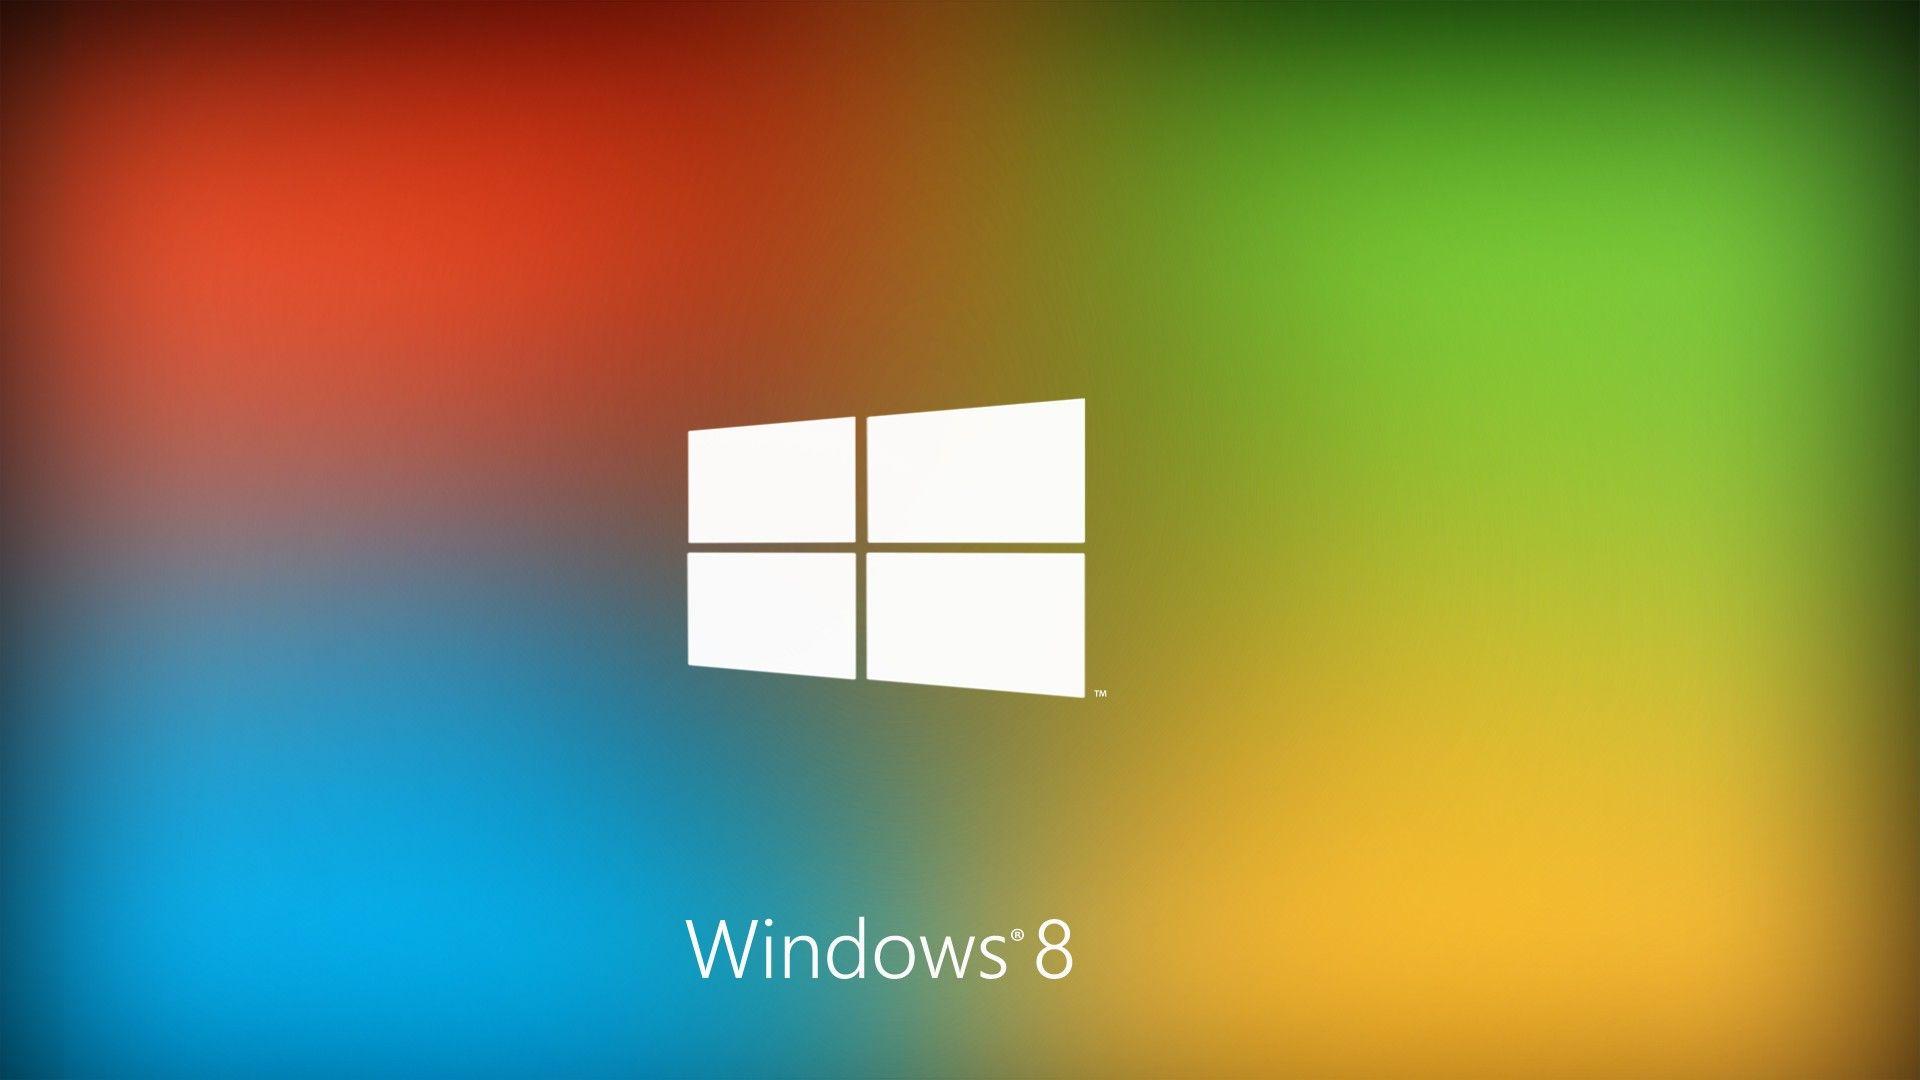 Best Windows 8 Logo 2013 HD Wallpaper of Windows